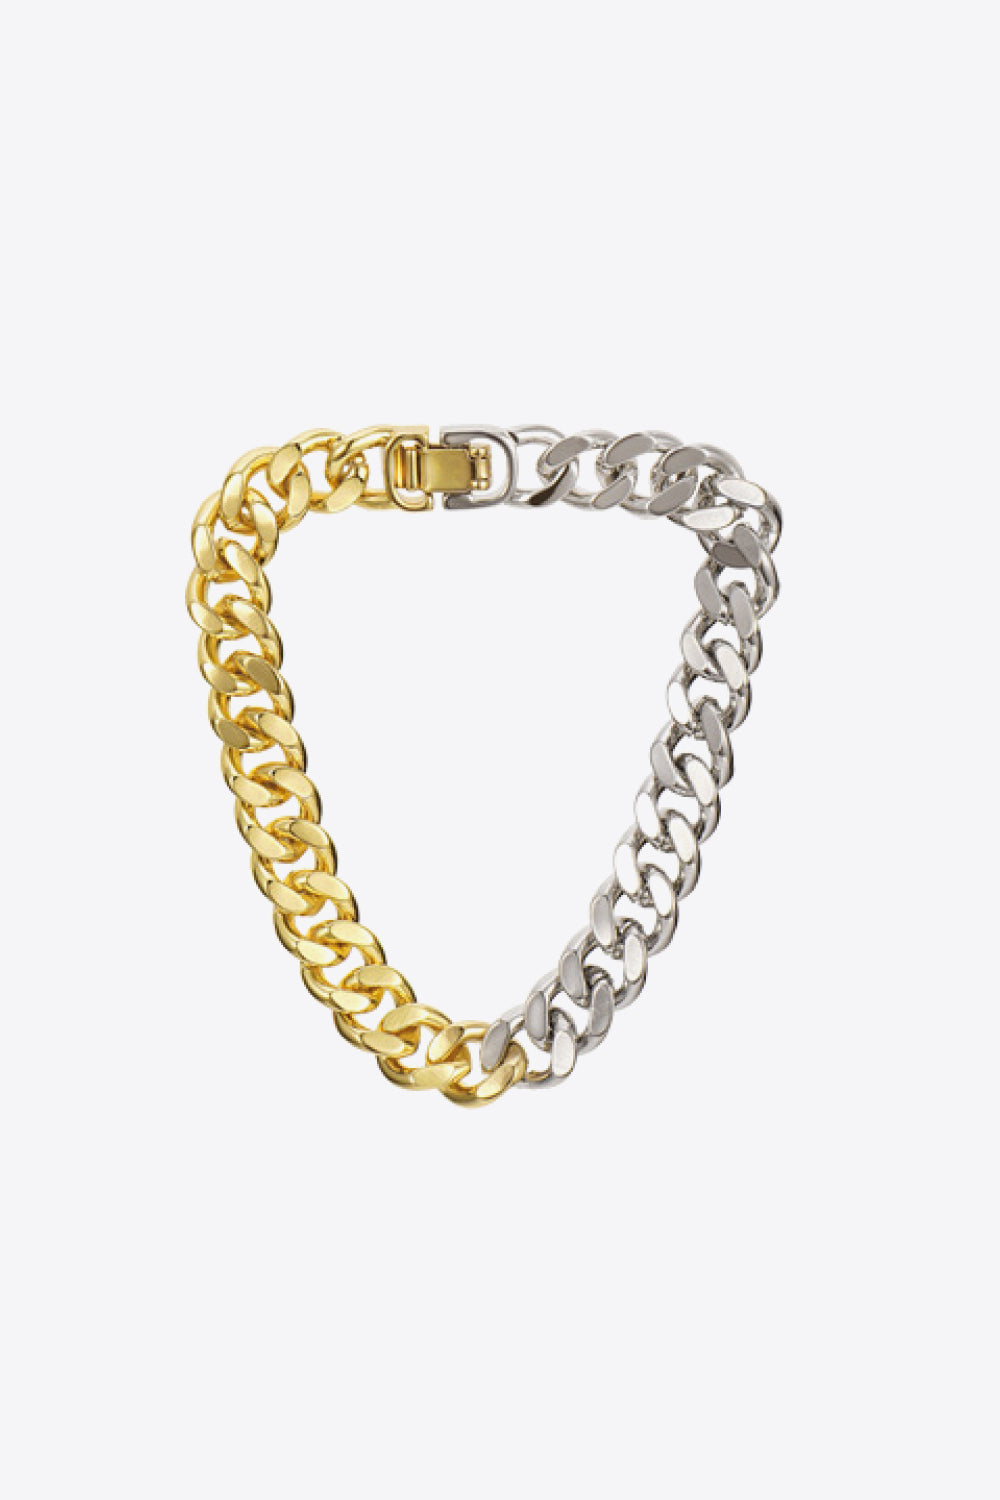 Two-Tone Chunky Chain Bracelet - Multi / One Size - Women’s Jewelry - Bracelets - 5 - 2024